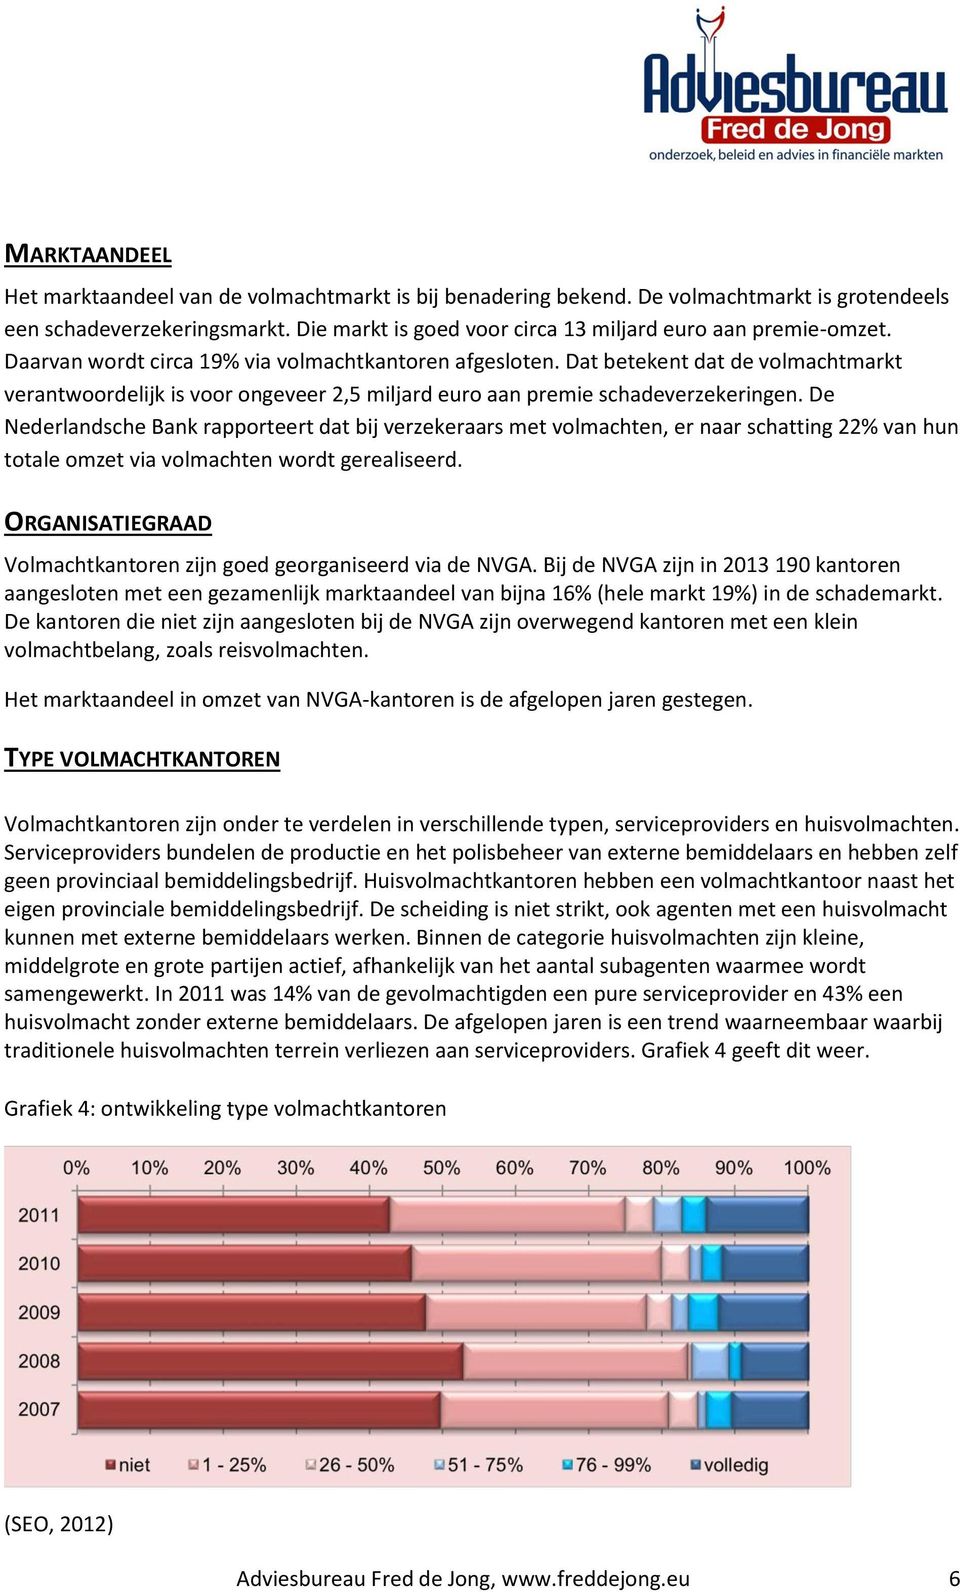 De Nederlandsche Bank rapporteert dat bij verzekeraars met volmachten, er naar schatting 22% van hun totale omzet via volmachten wordt gerealiseerd.